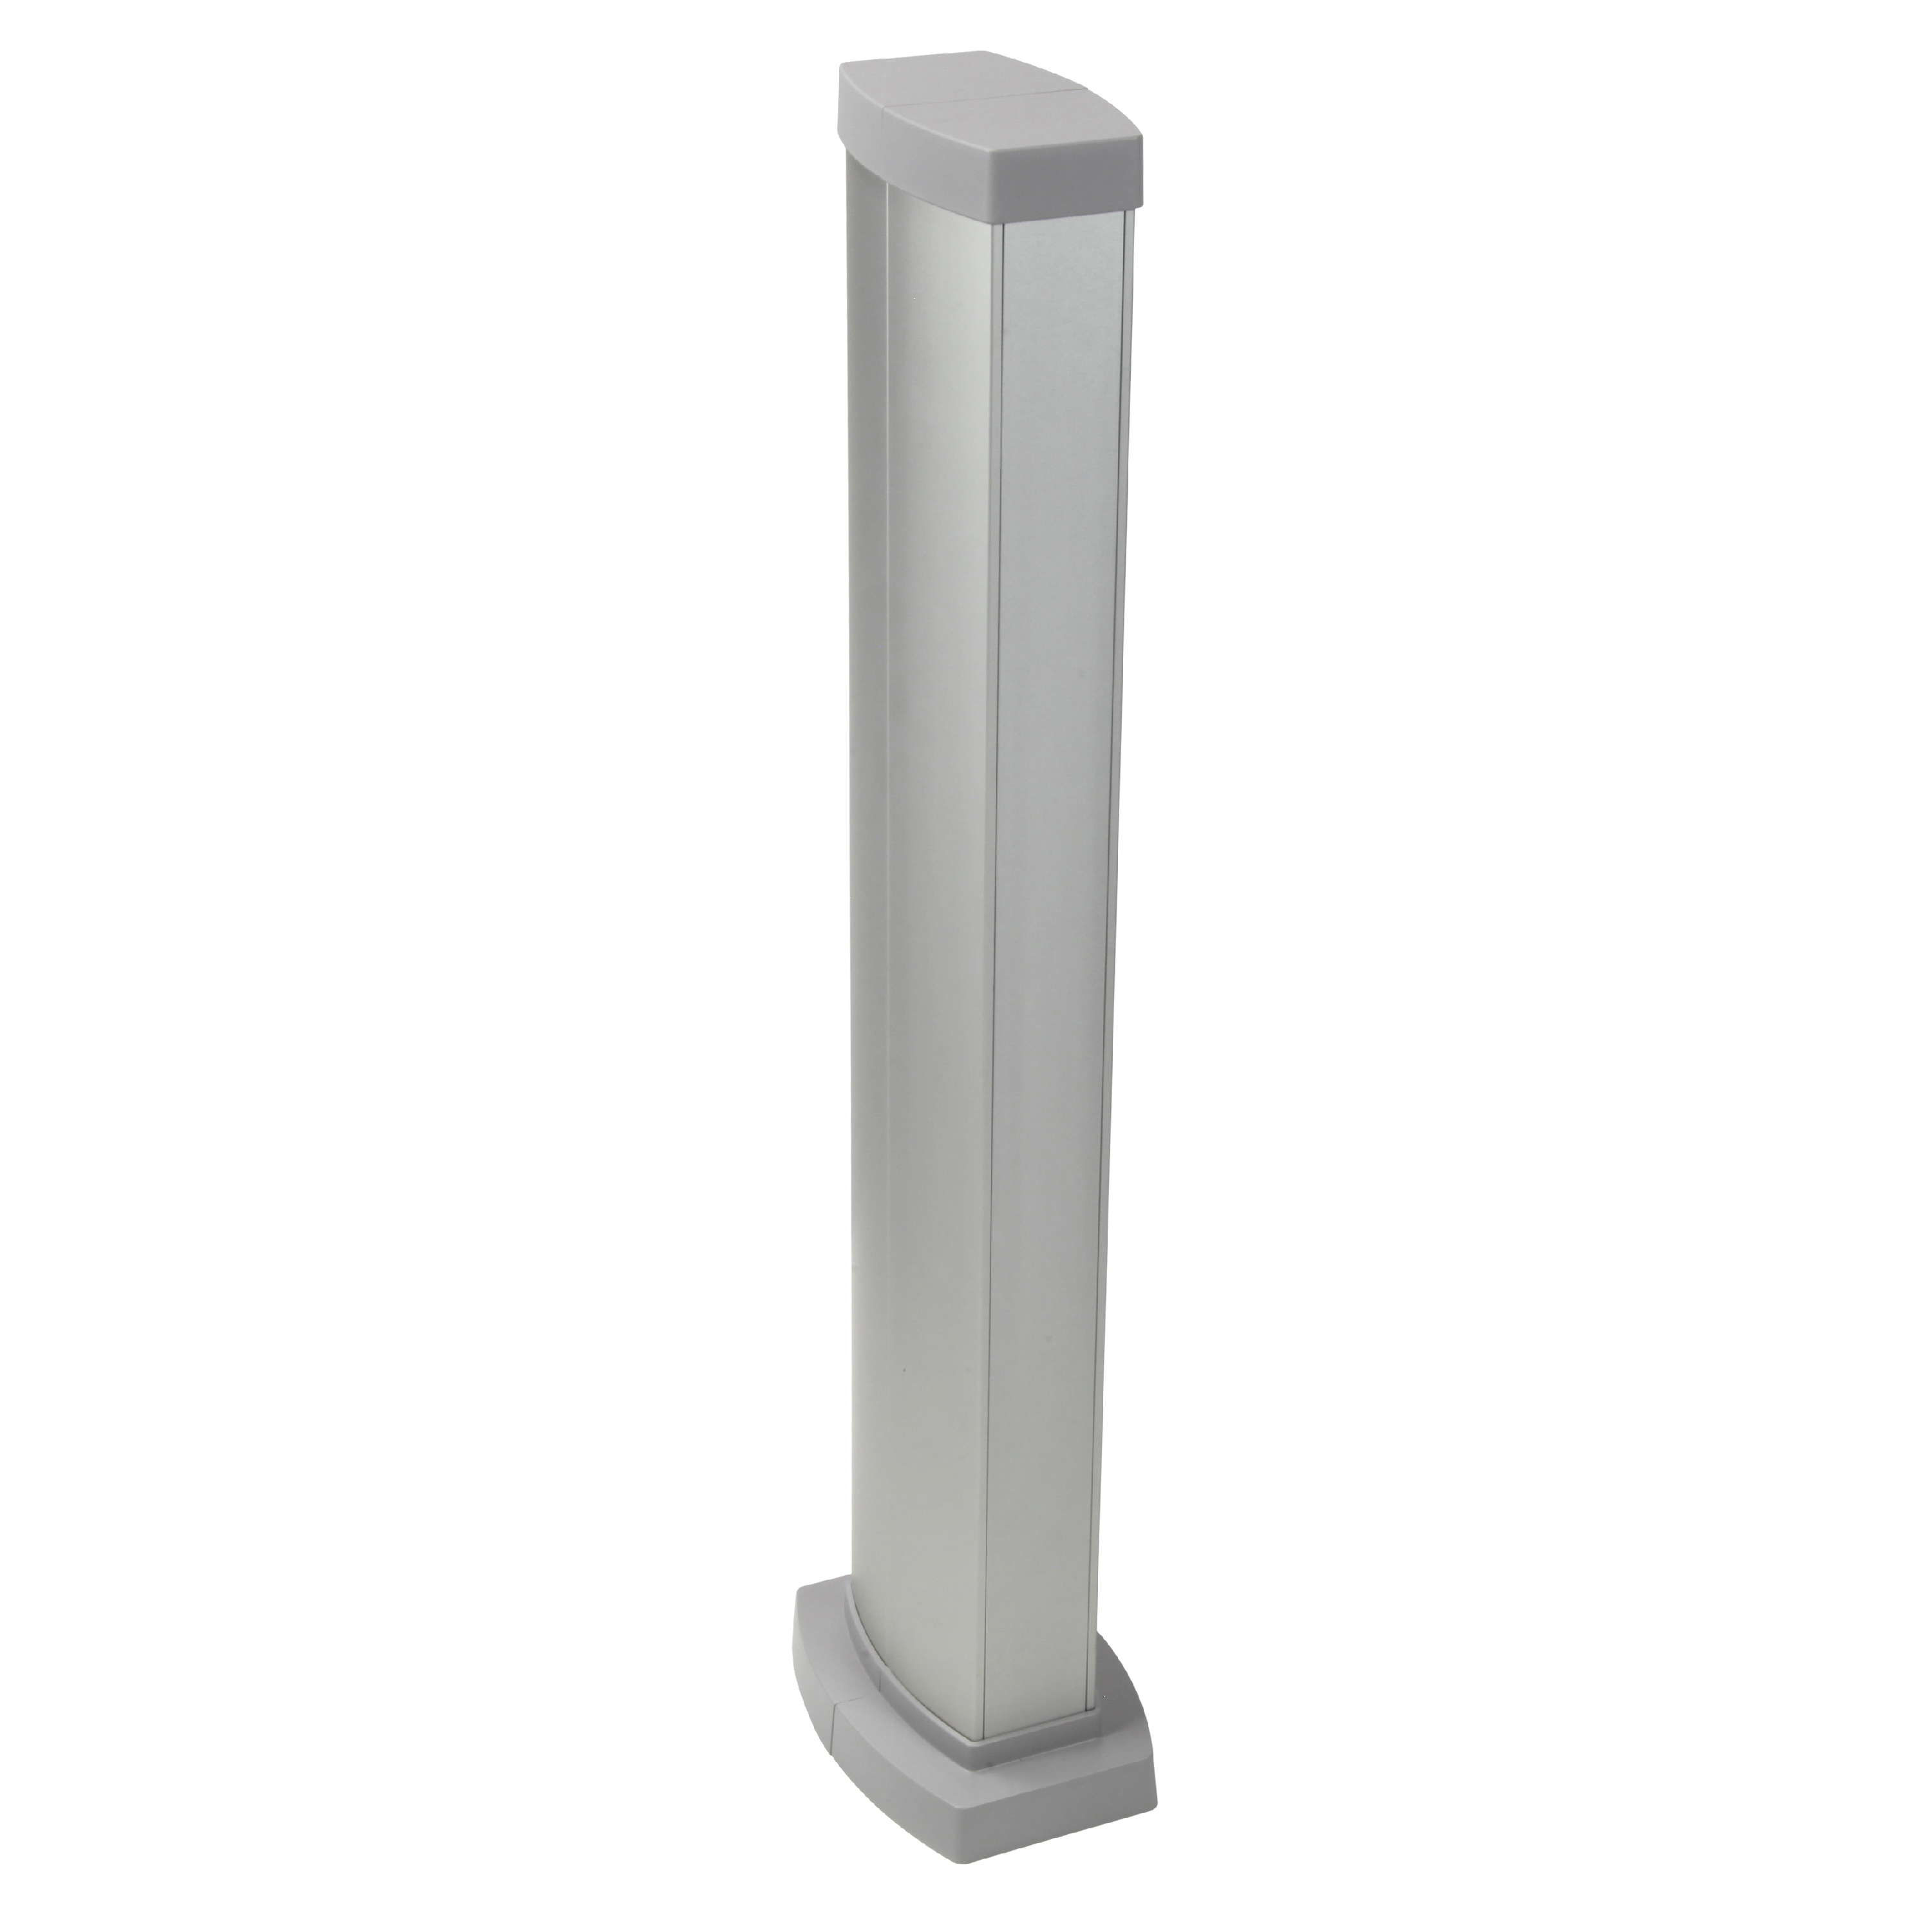 Snap-On мини-колонна алюминиевая с крышкой из алюминия, 2 секции, высота 0,68 метра, цвет алюминий 653024 Legrand